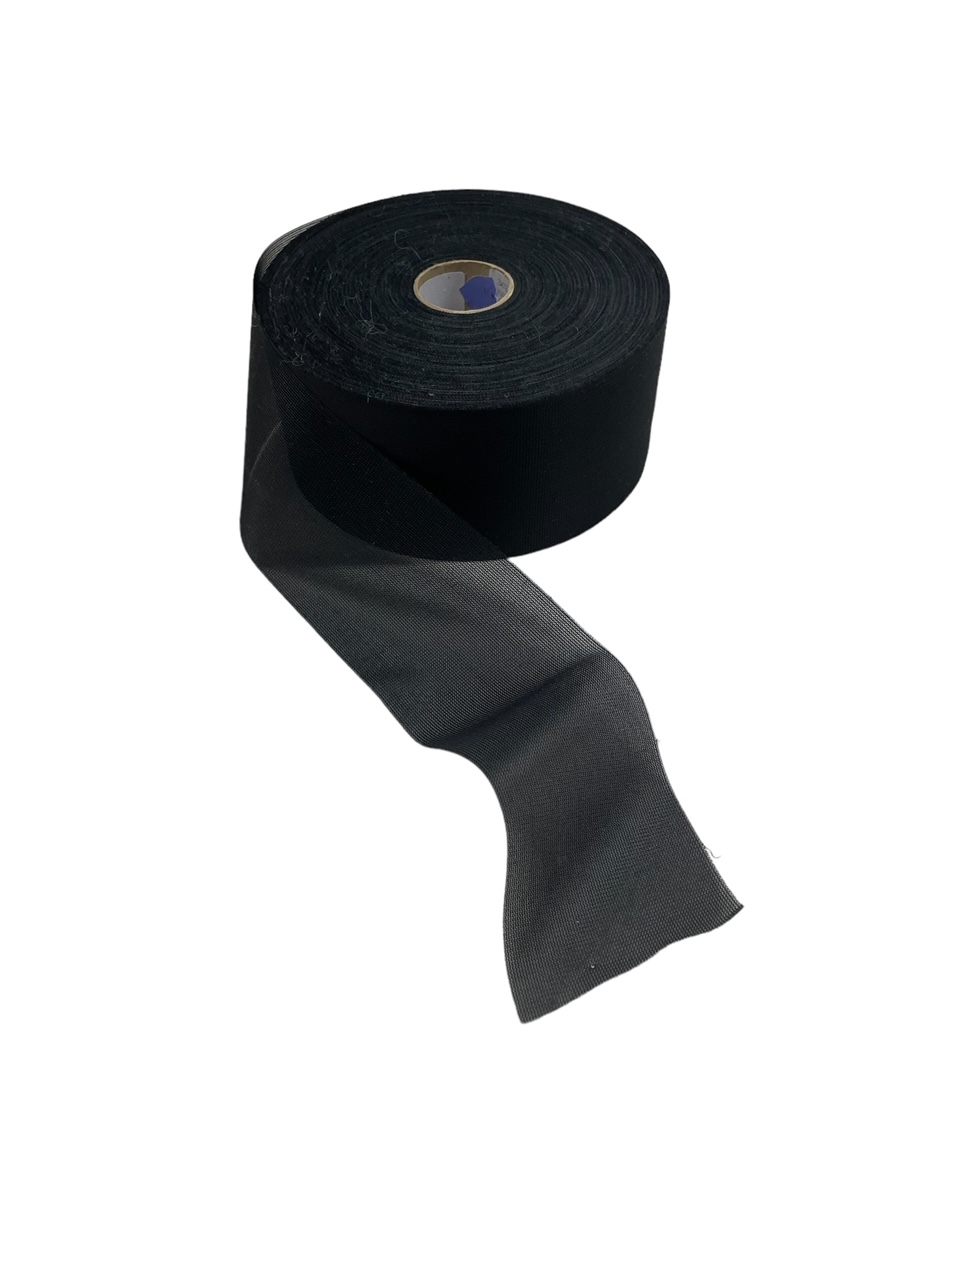 Kanalband i svart till gardinupphängningar i polyester i bredd 7 cm